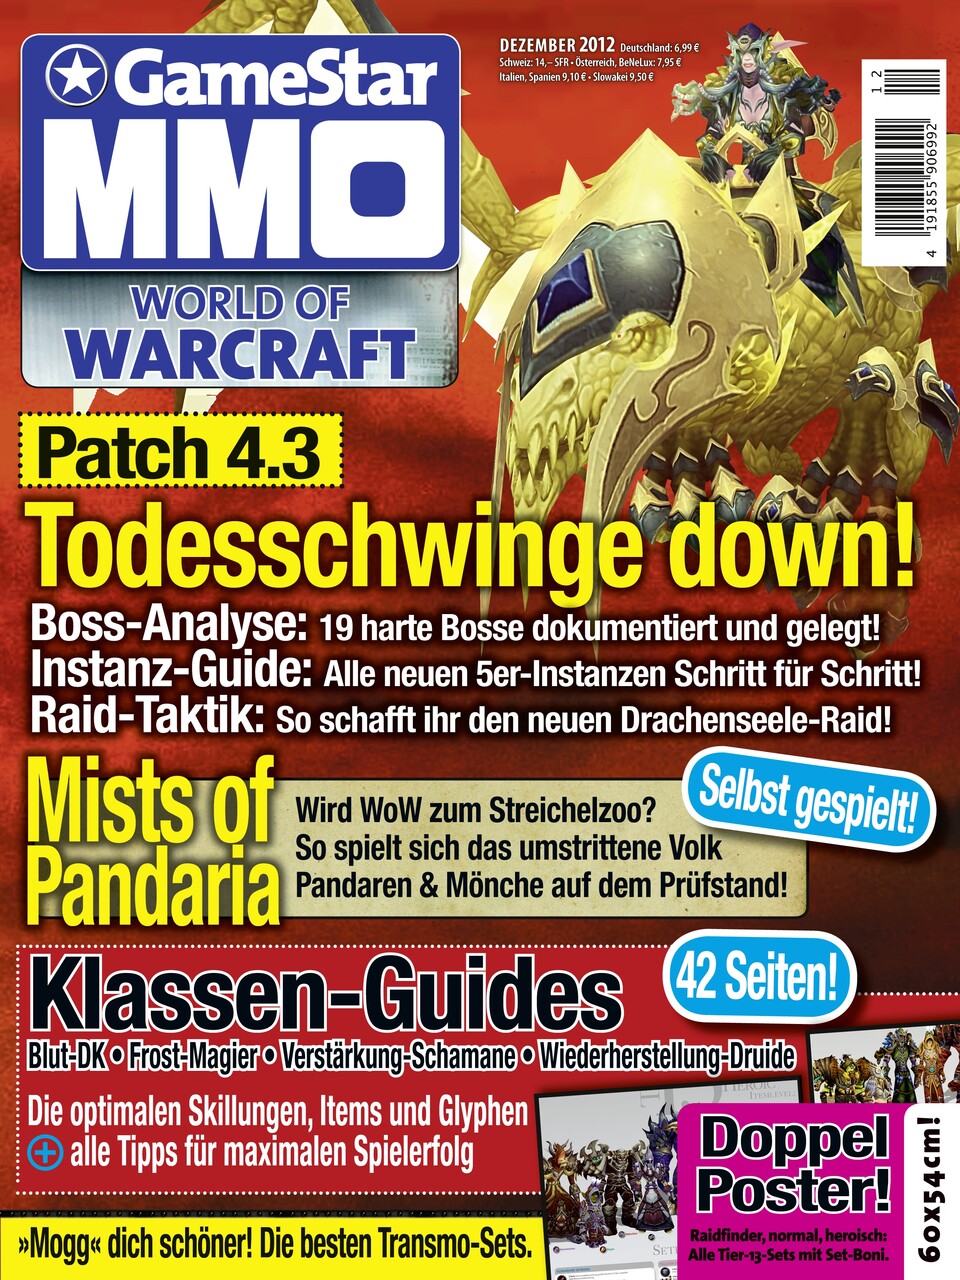 Das Cover des GameStar MMO Magazins 12/11 - das Heft ist ab sofort erhältlich.